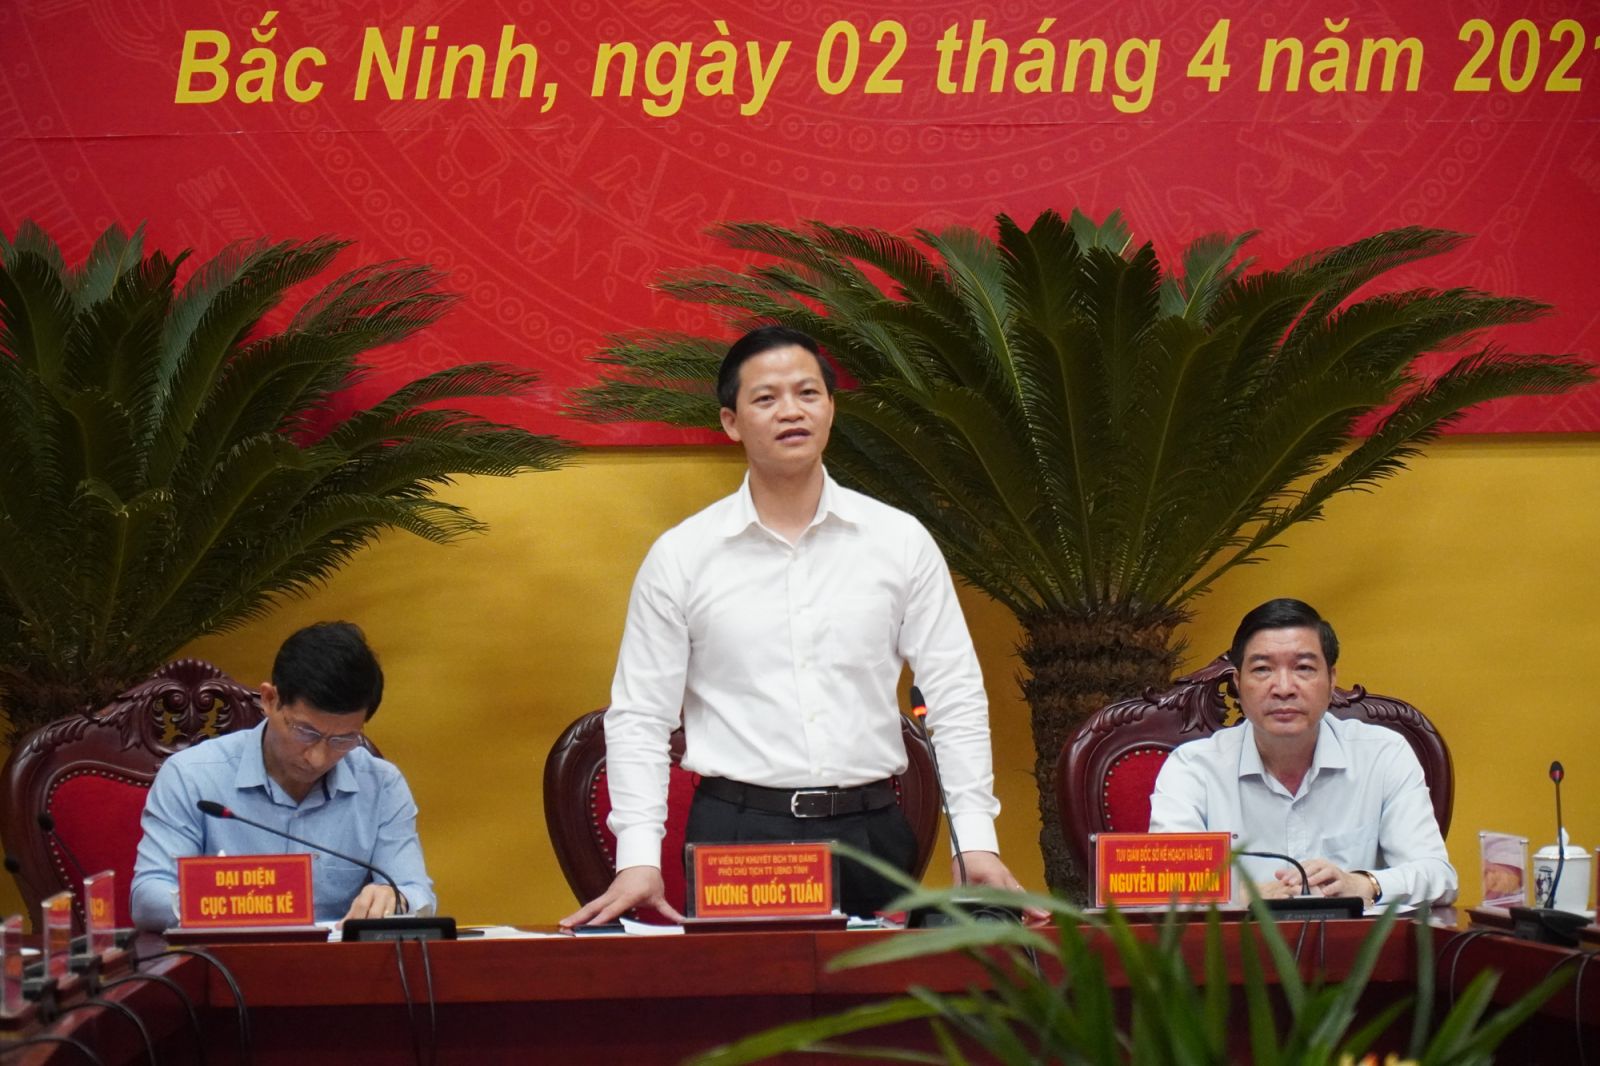 Ông Vương Quốc Tuấn, Ủy viên dự khuyết Trung ương Đảng, Phó chủ tịch Thường trực UBND tỉnh Bắc Ninh thông tin về tình hình kinh tế - xã hội quý 1/2021.